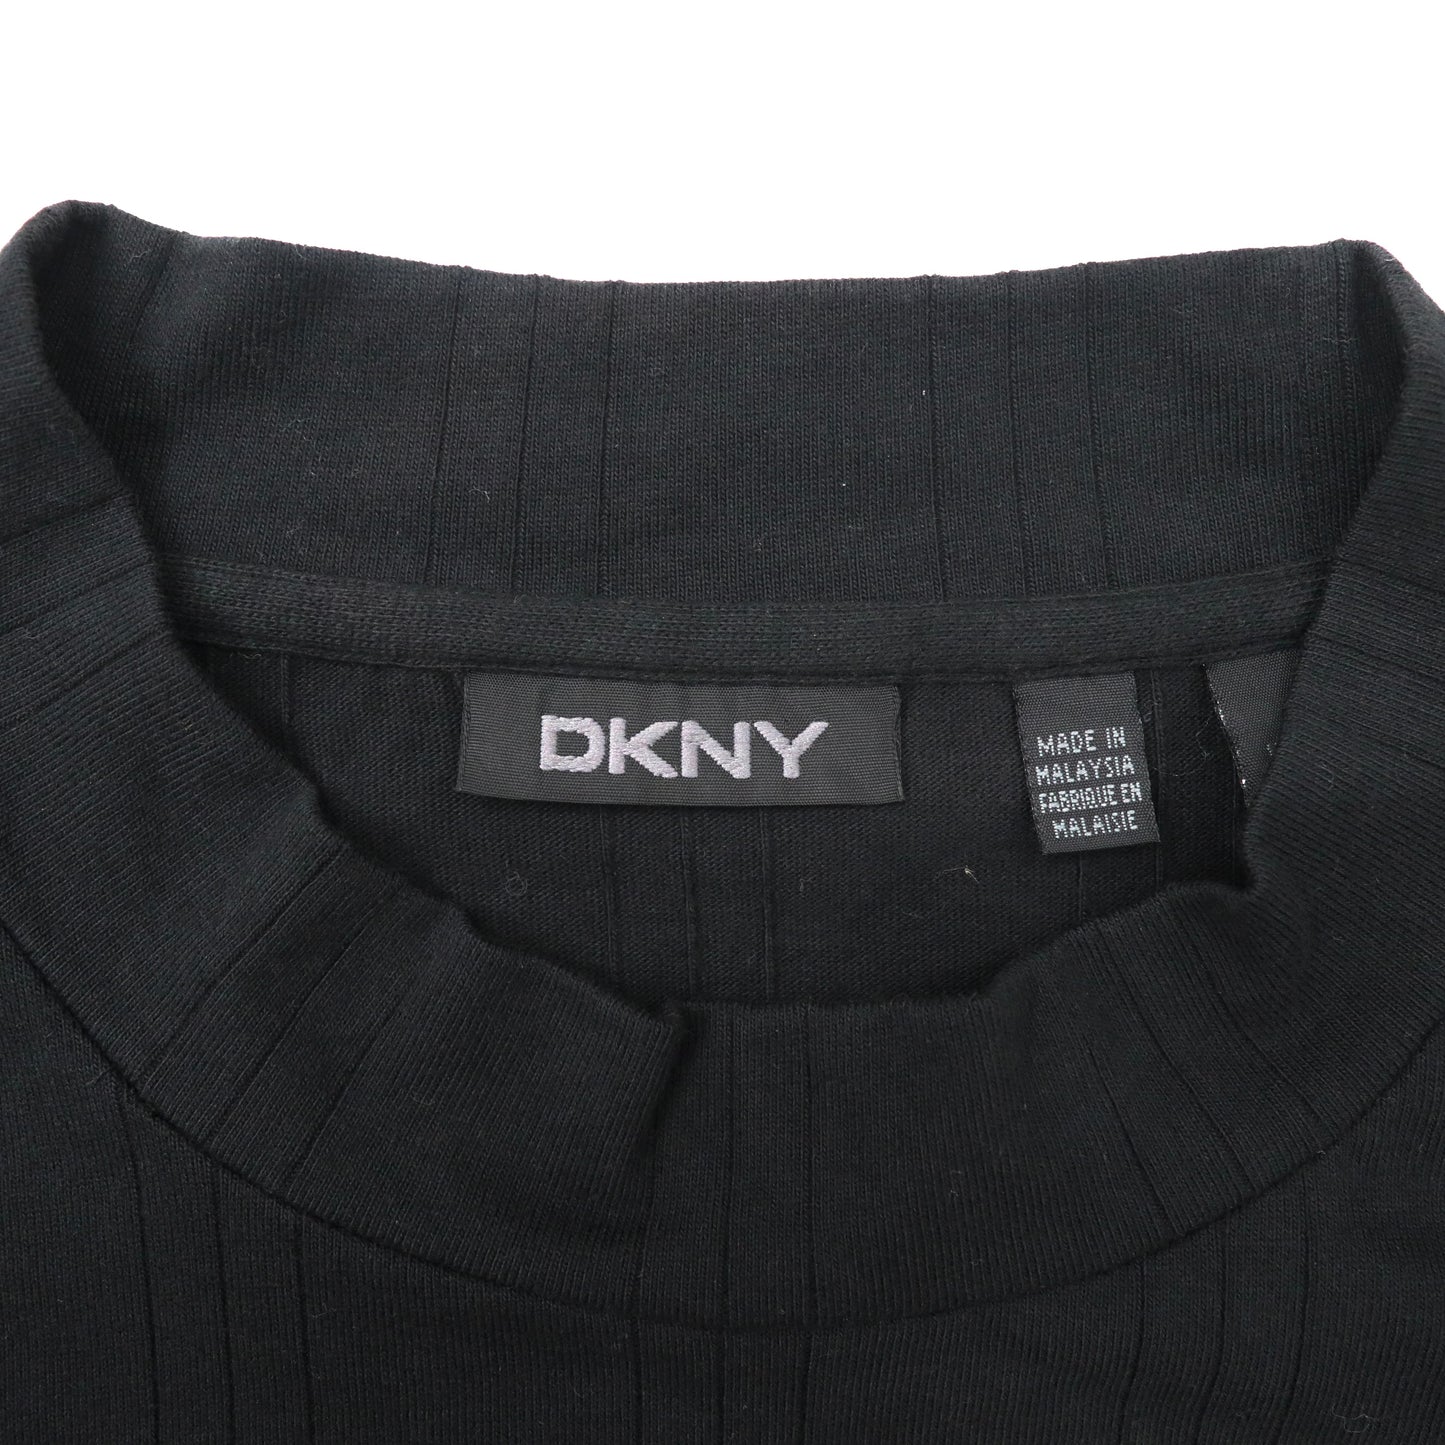 DKNY ハイネックカットソー L ブラック コットン